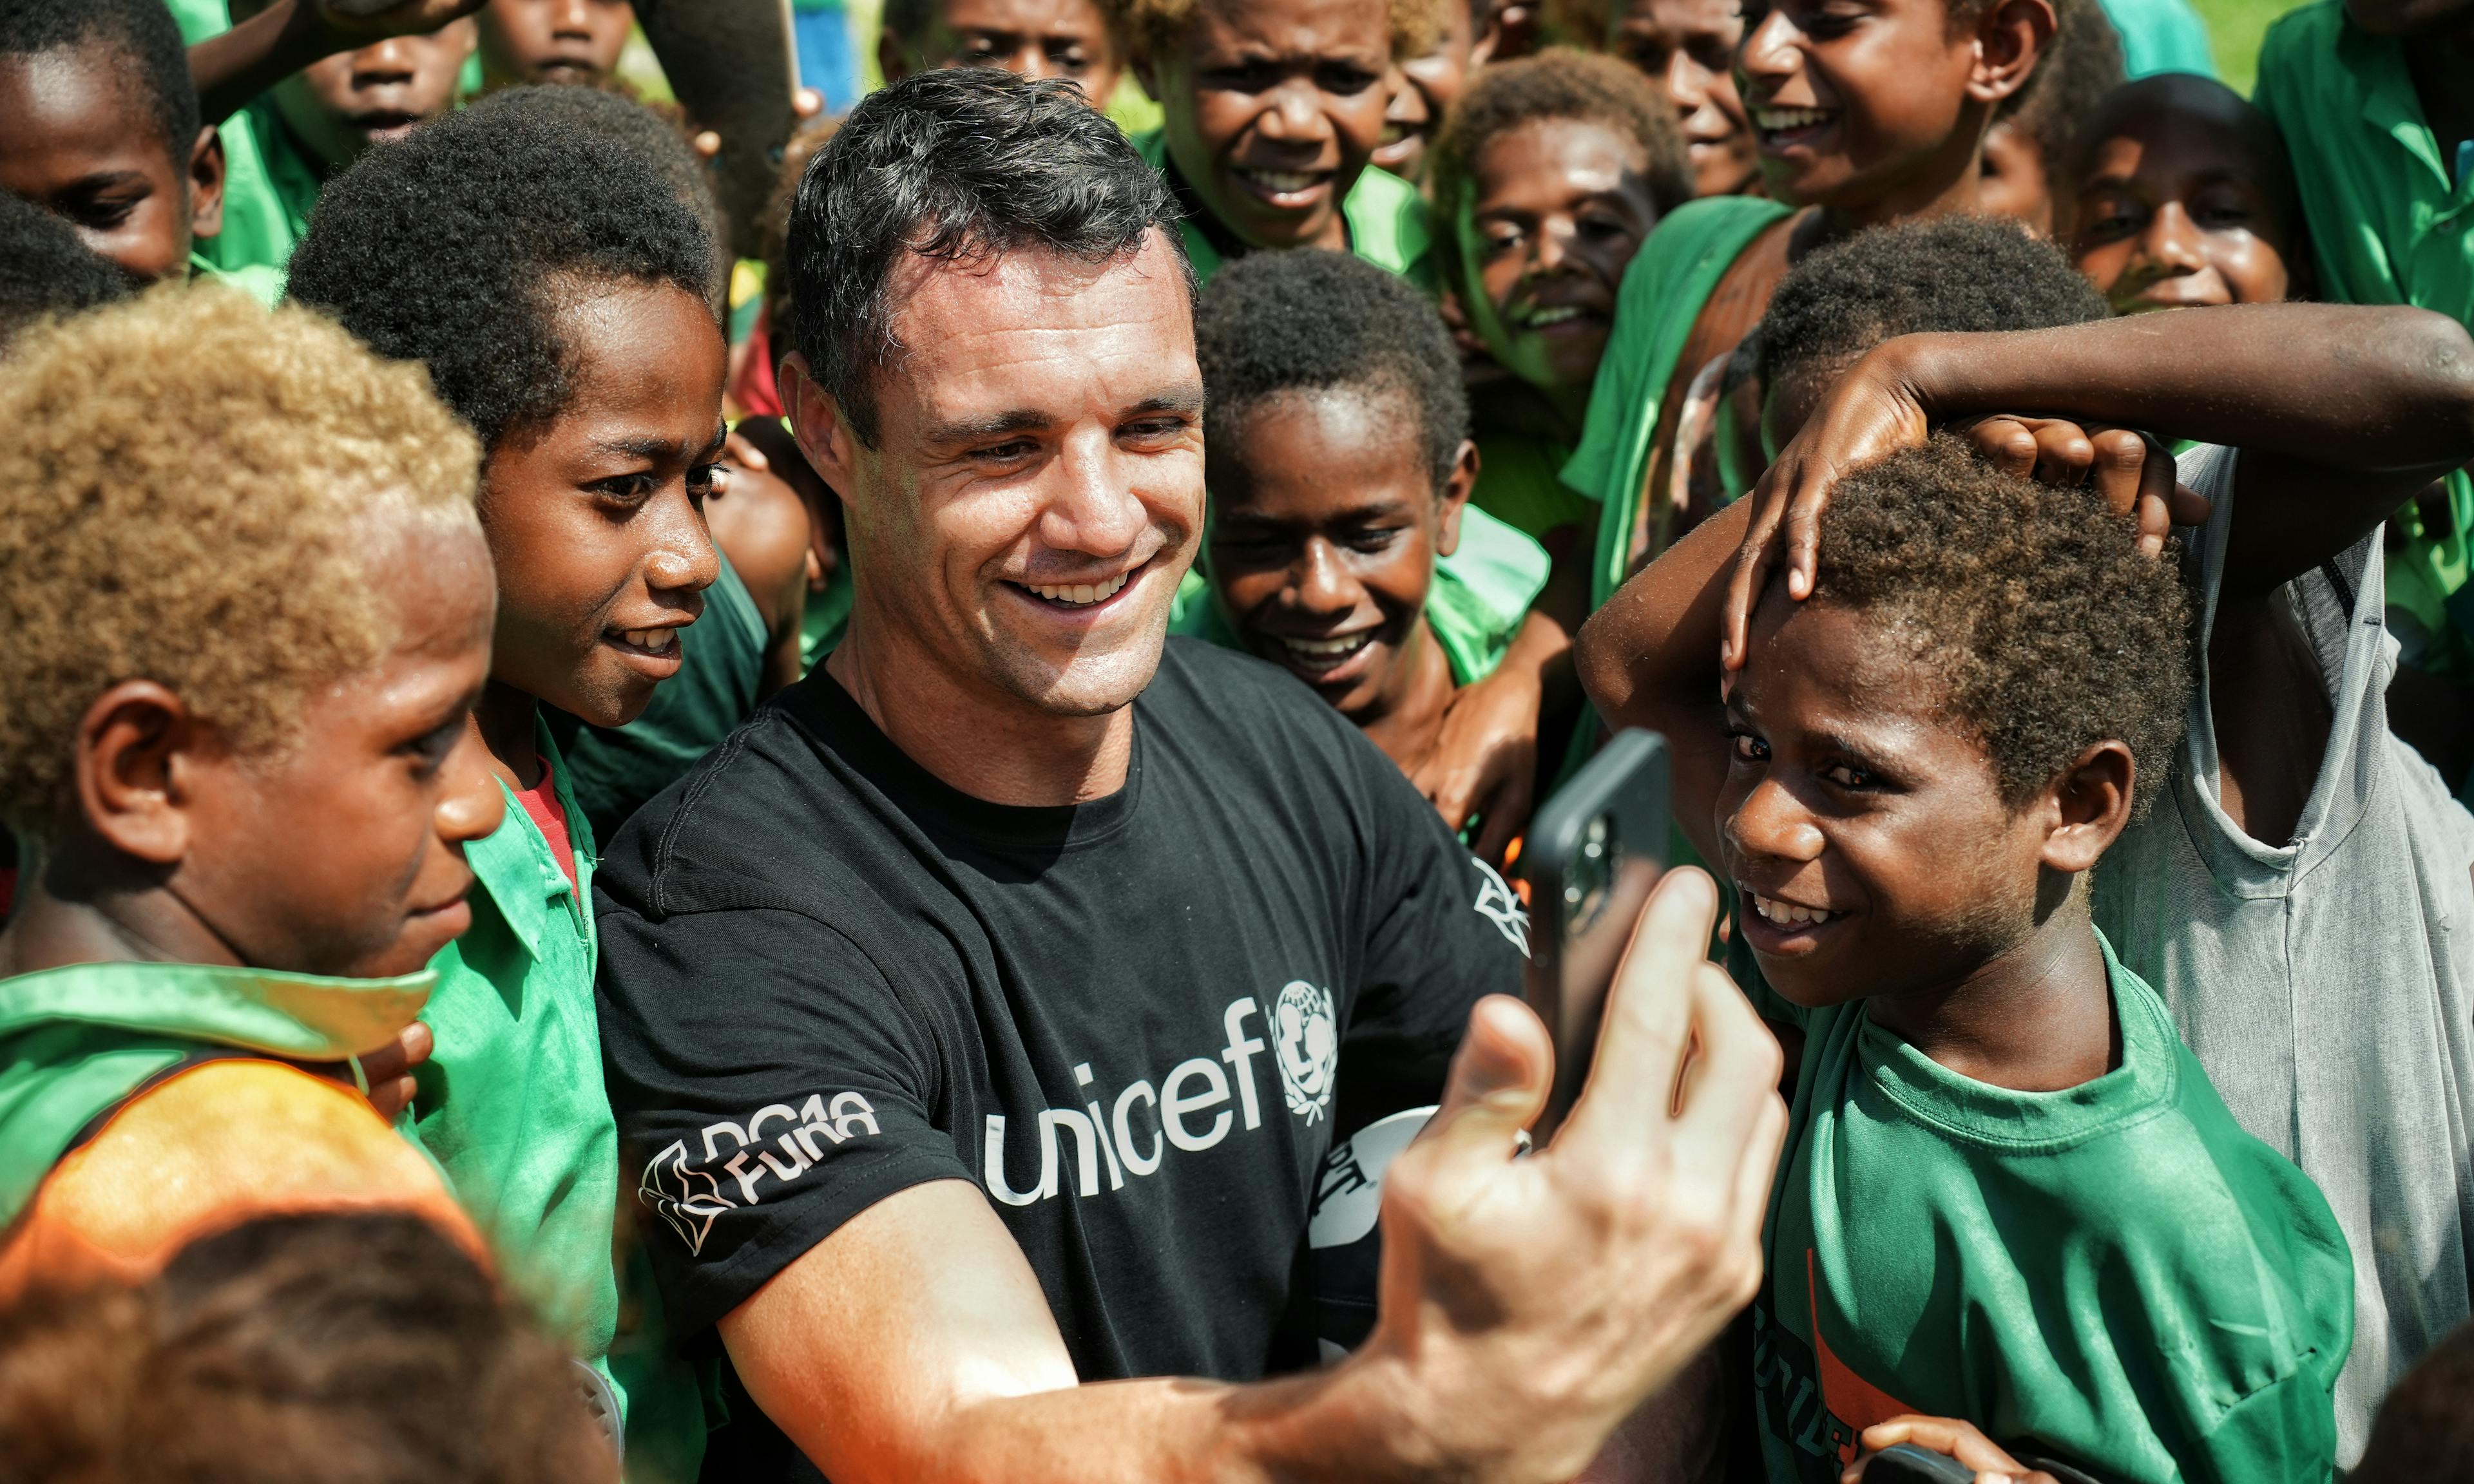 Dan Carter For UNICEF On World Children's Day